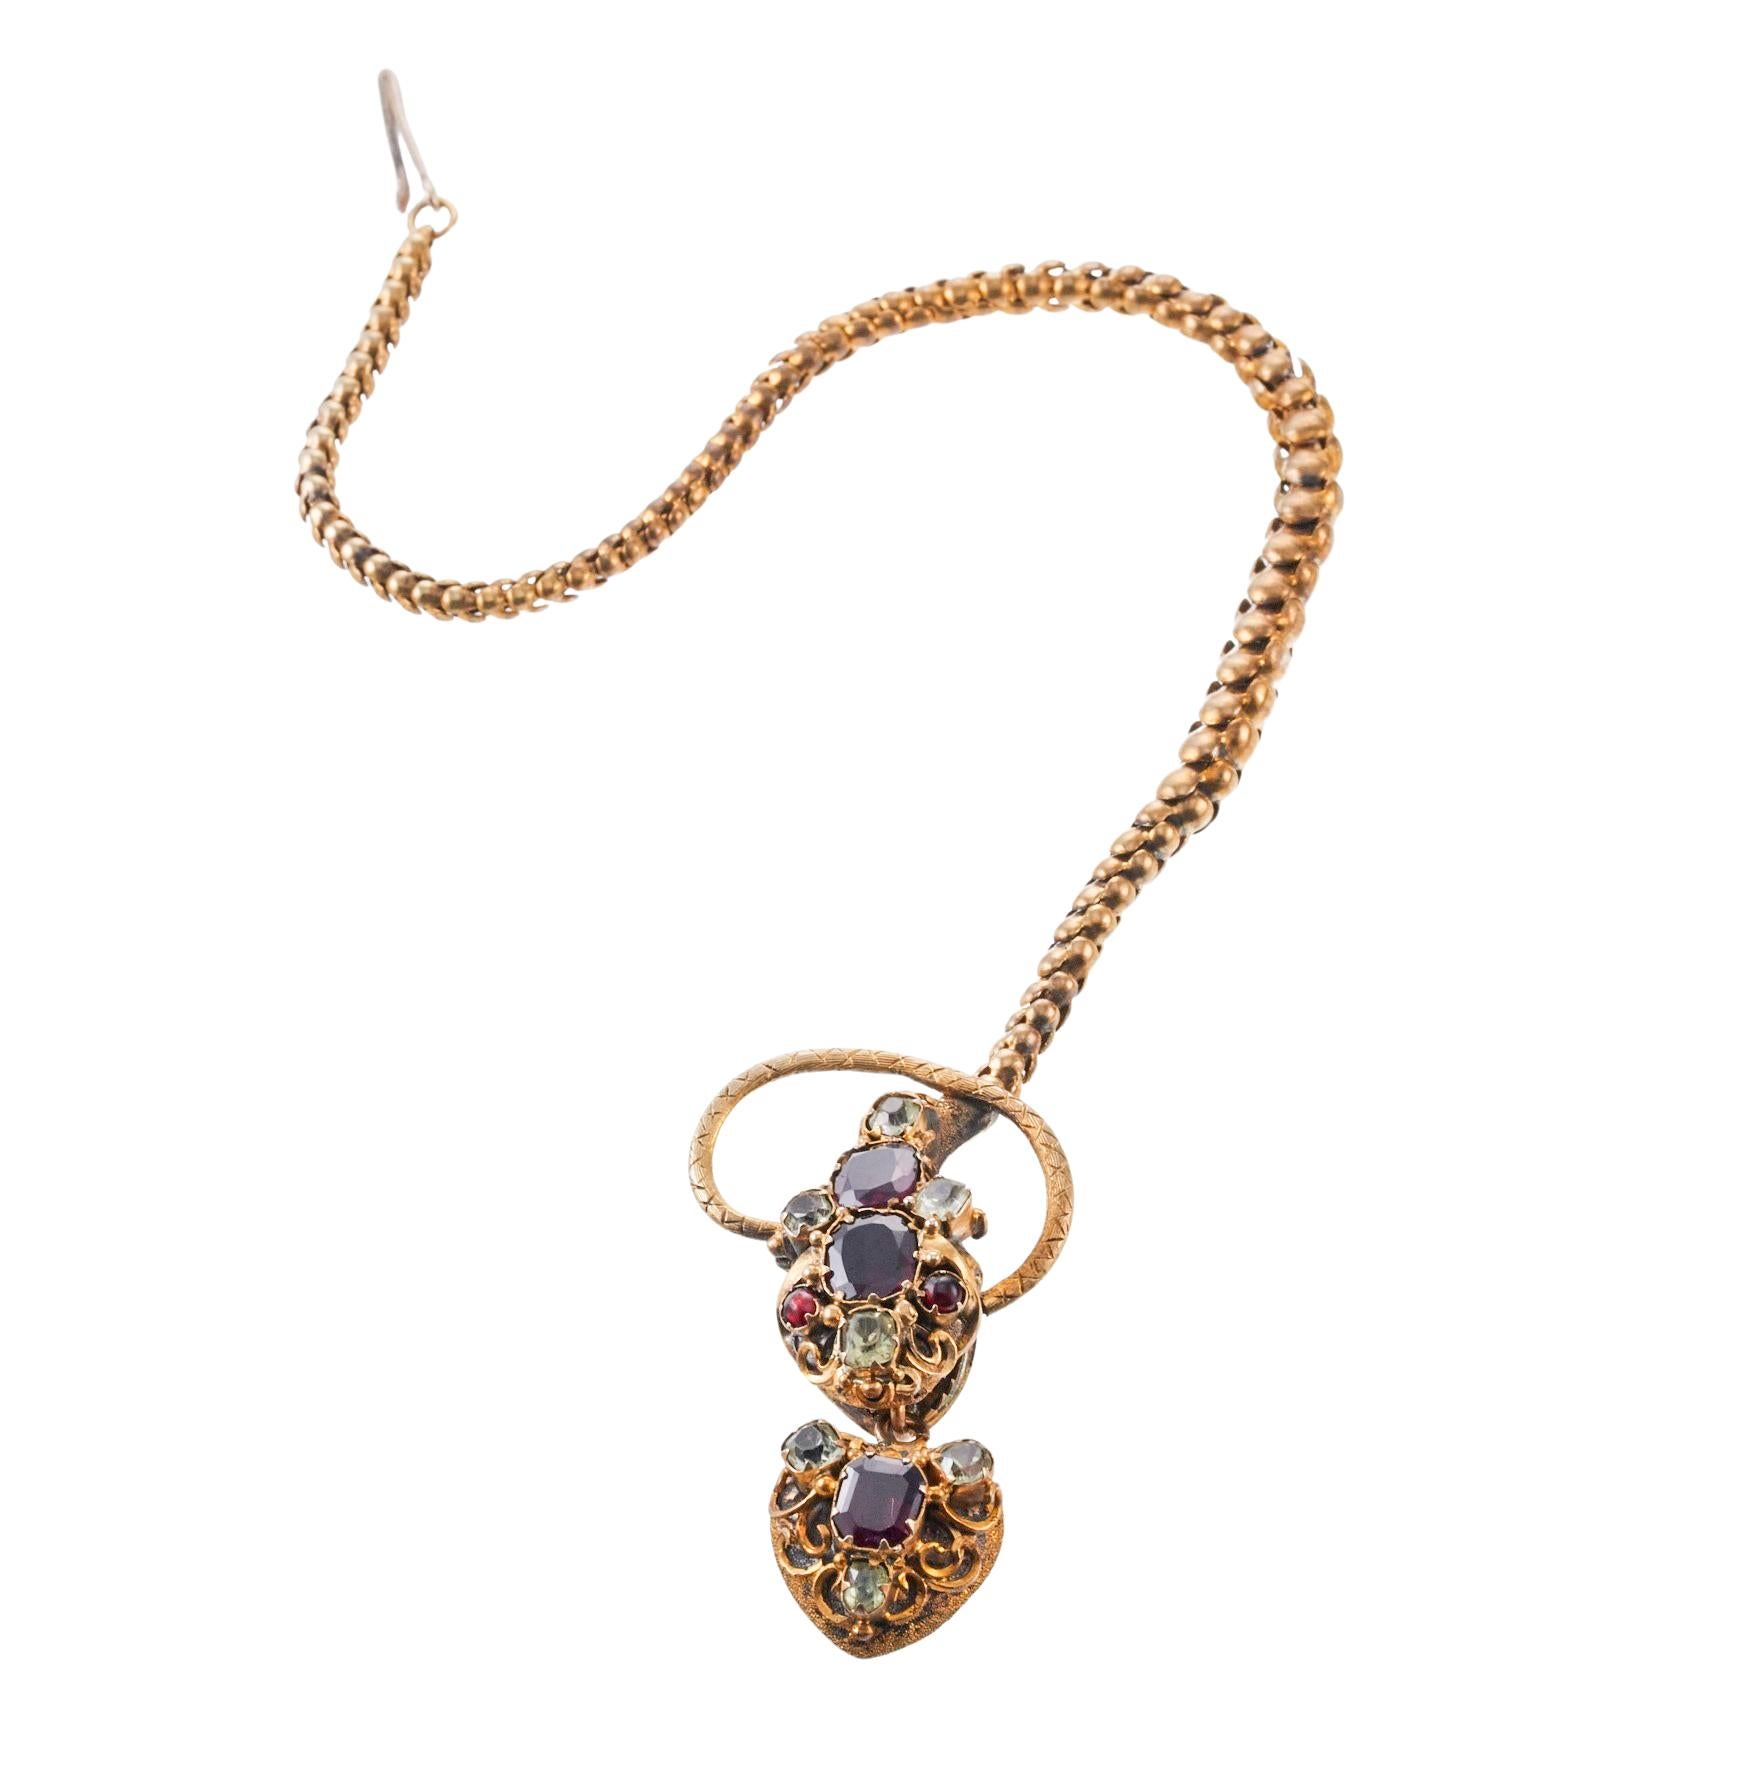 Antikes frühviktorianisches 14-karätiges goldenes Schlangenarmband mit Herzmedaillon. Schlangenkopf und Medaillon mit Diamanten und Rubinen verziert. Das Armband ist 7,5